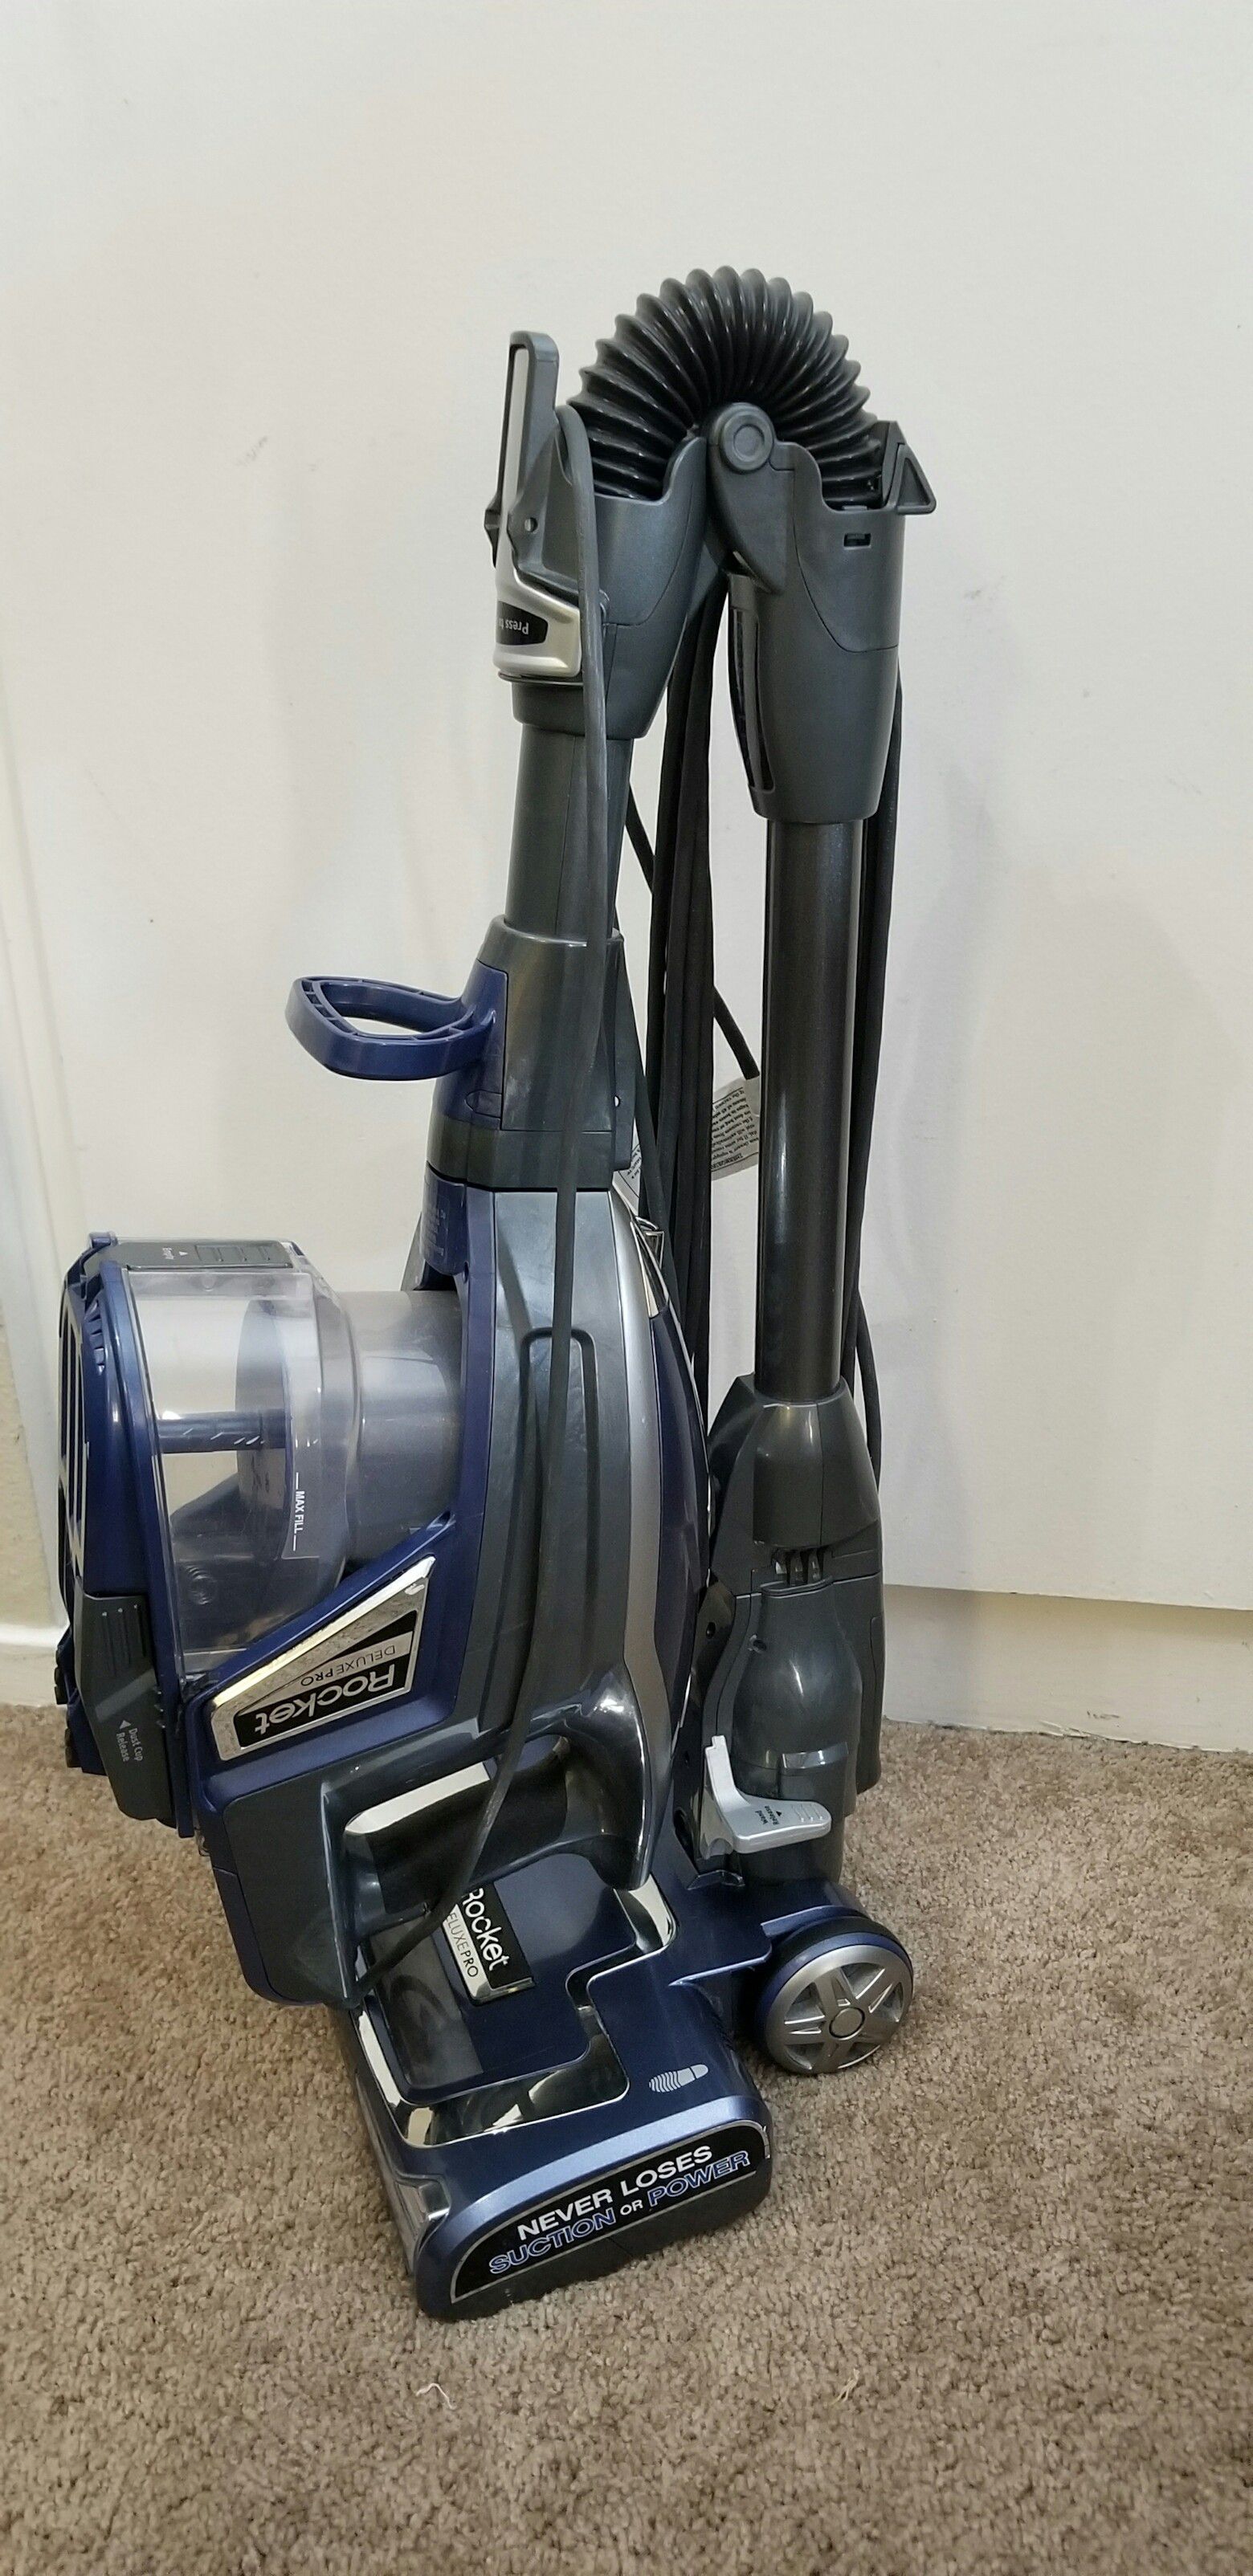 Shark Rocket Deluxe Pro Carpet and Floor Vacuum